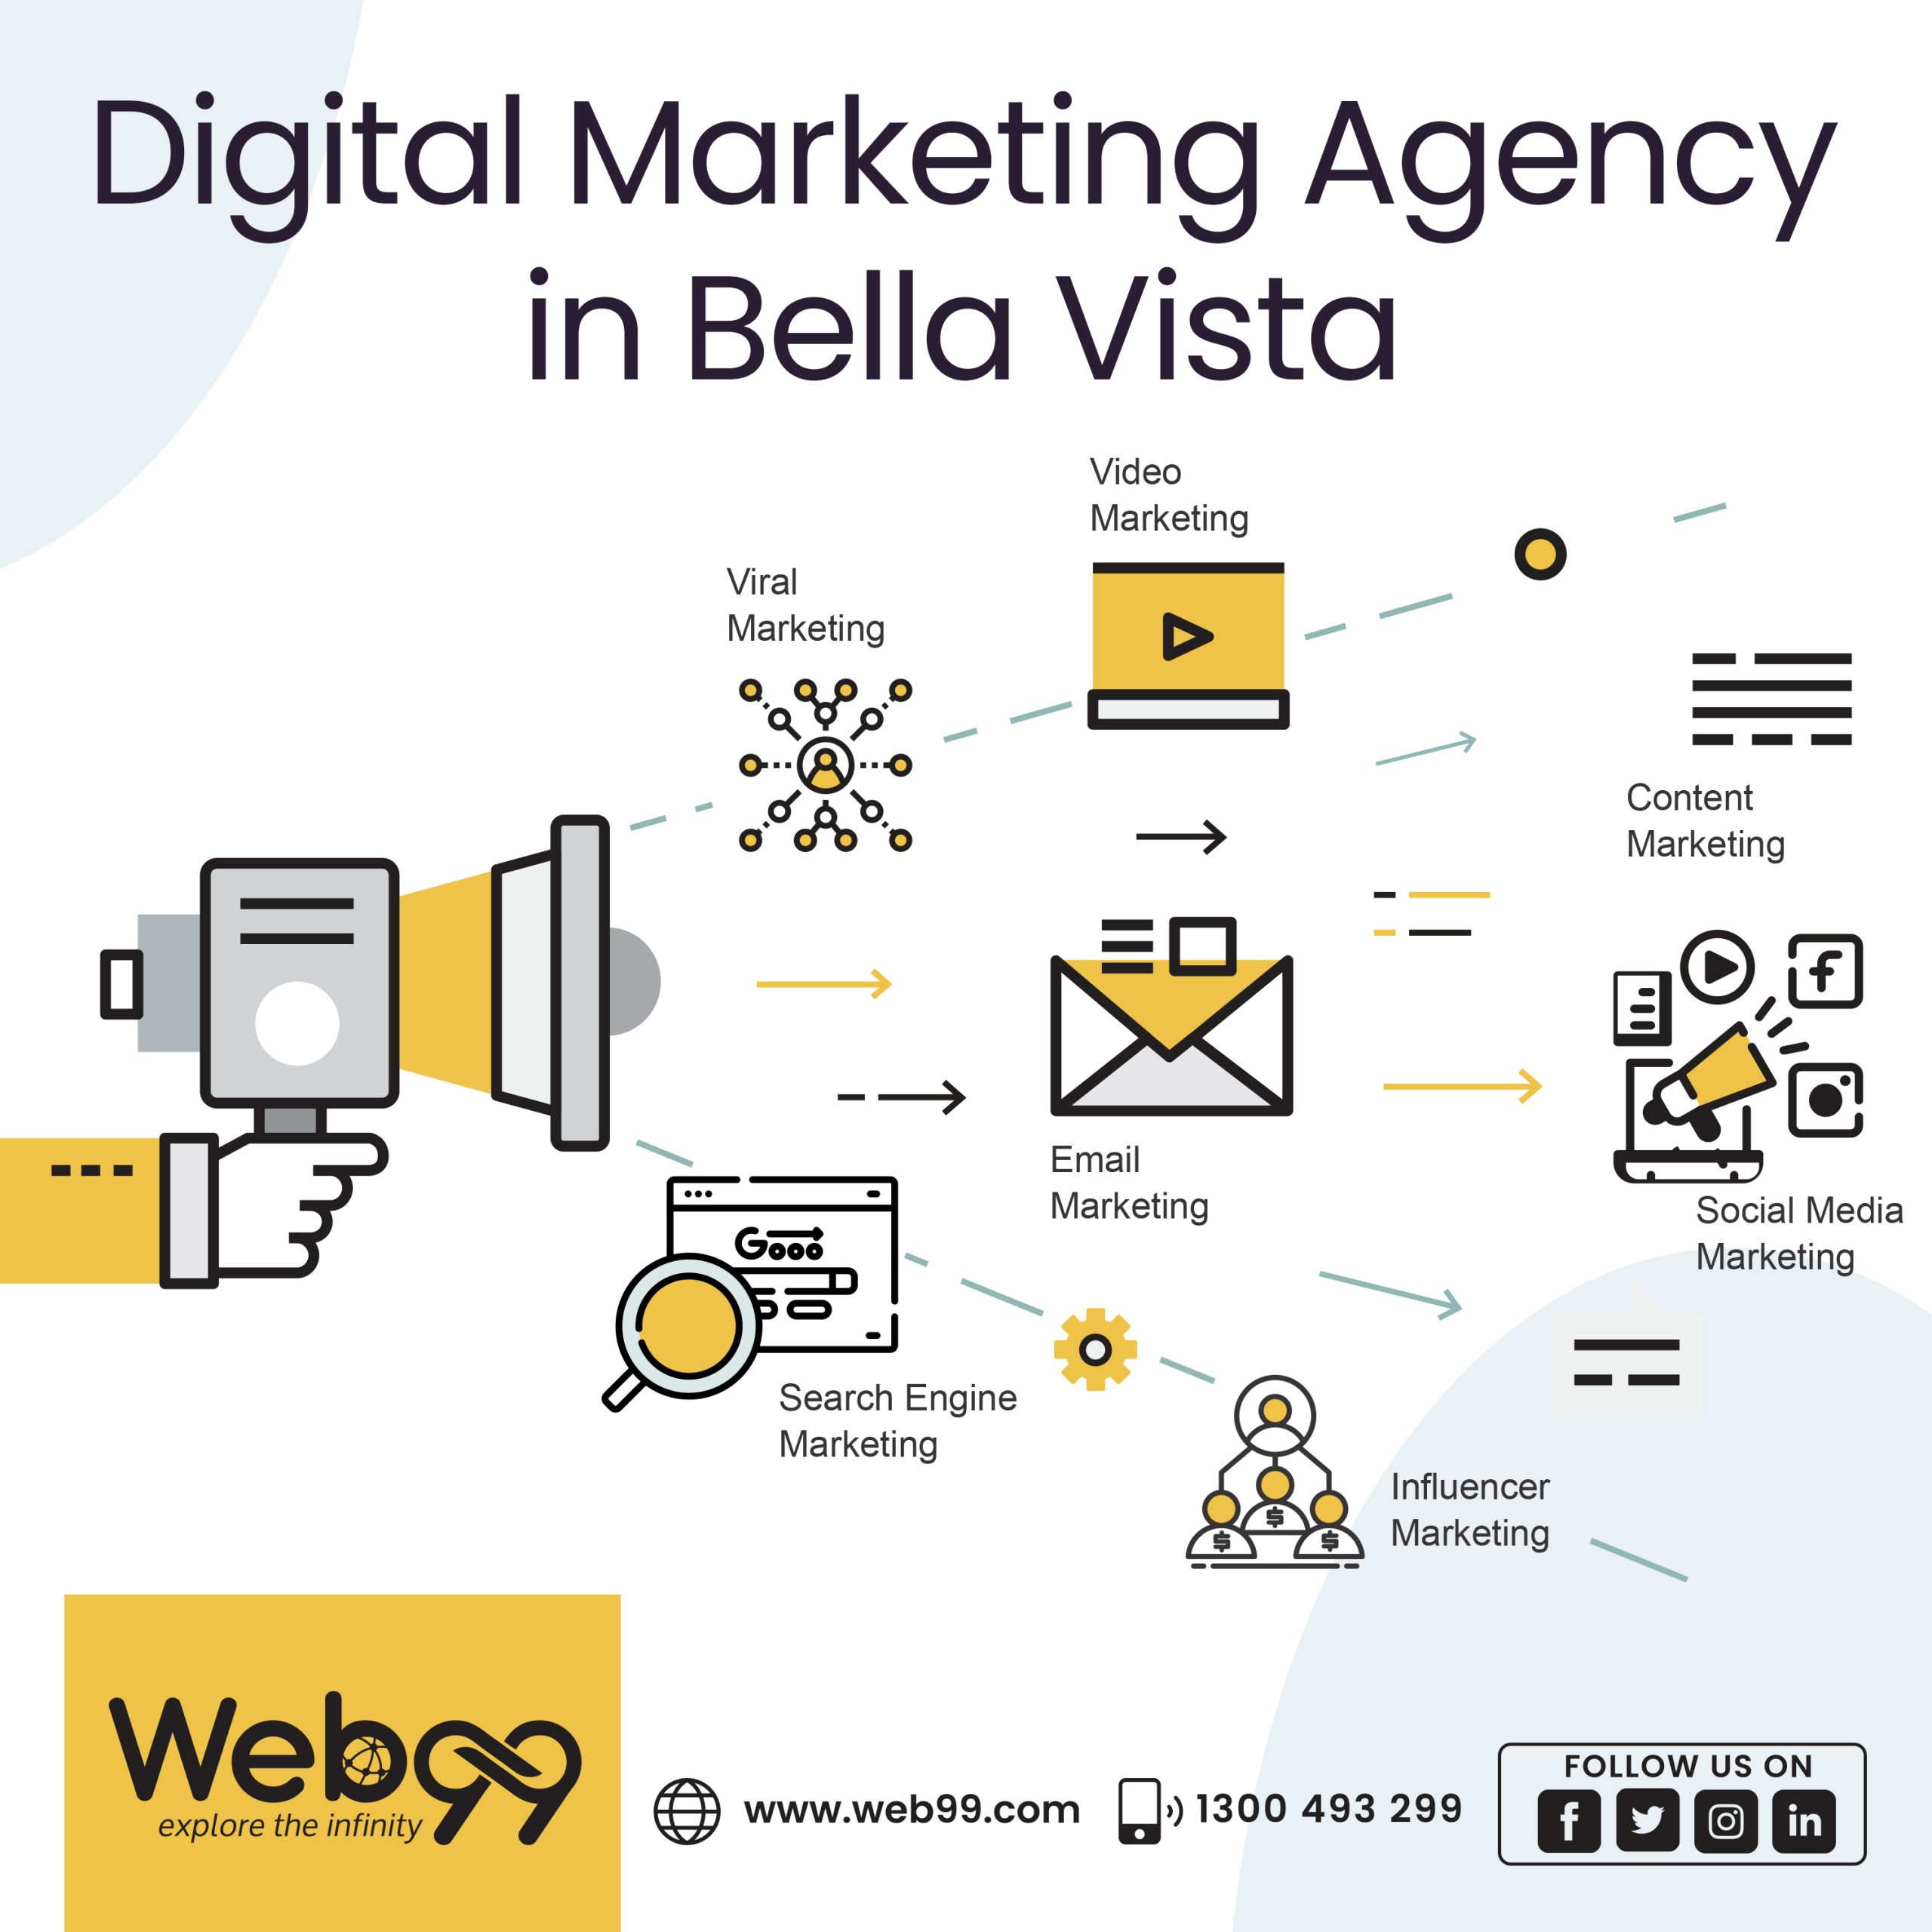 Digital Marketing Agency in Bella Vista